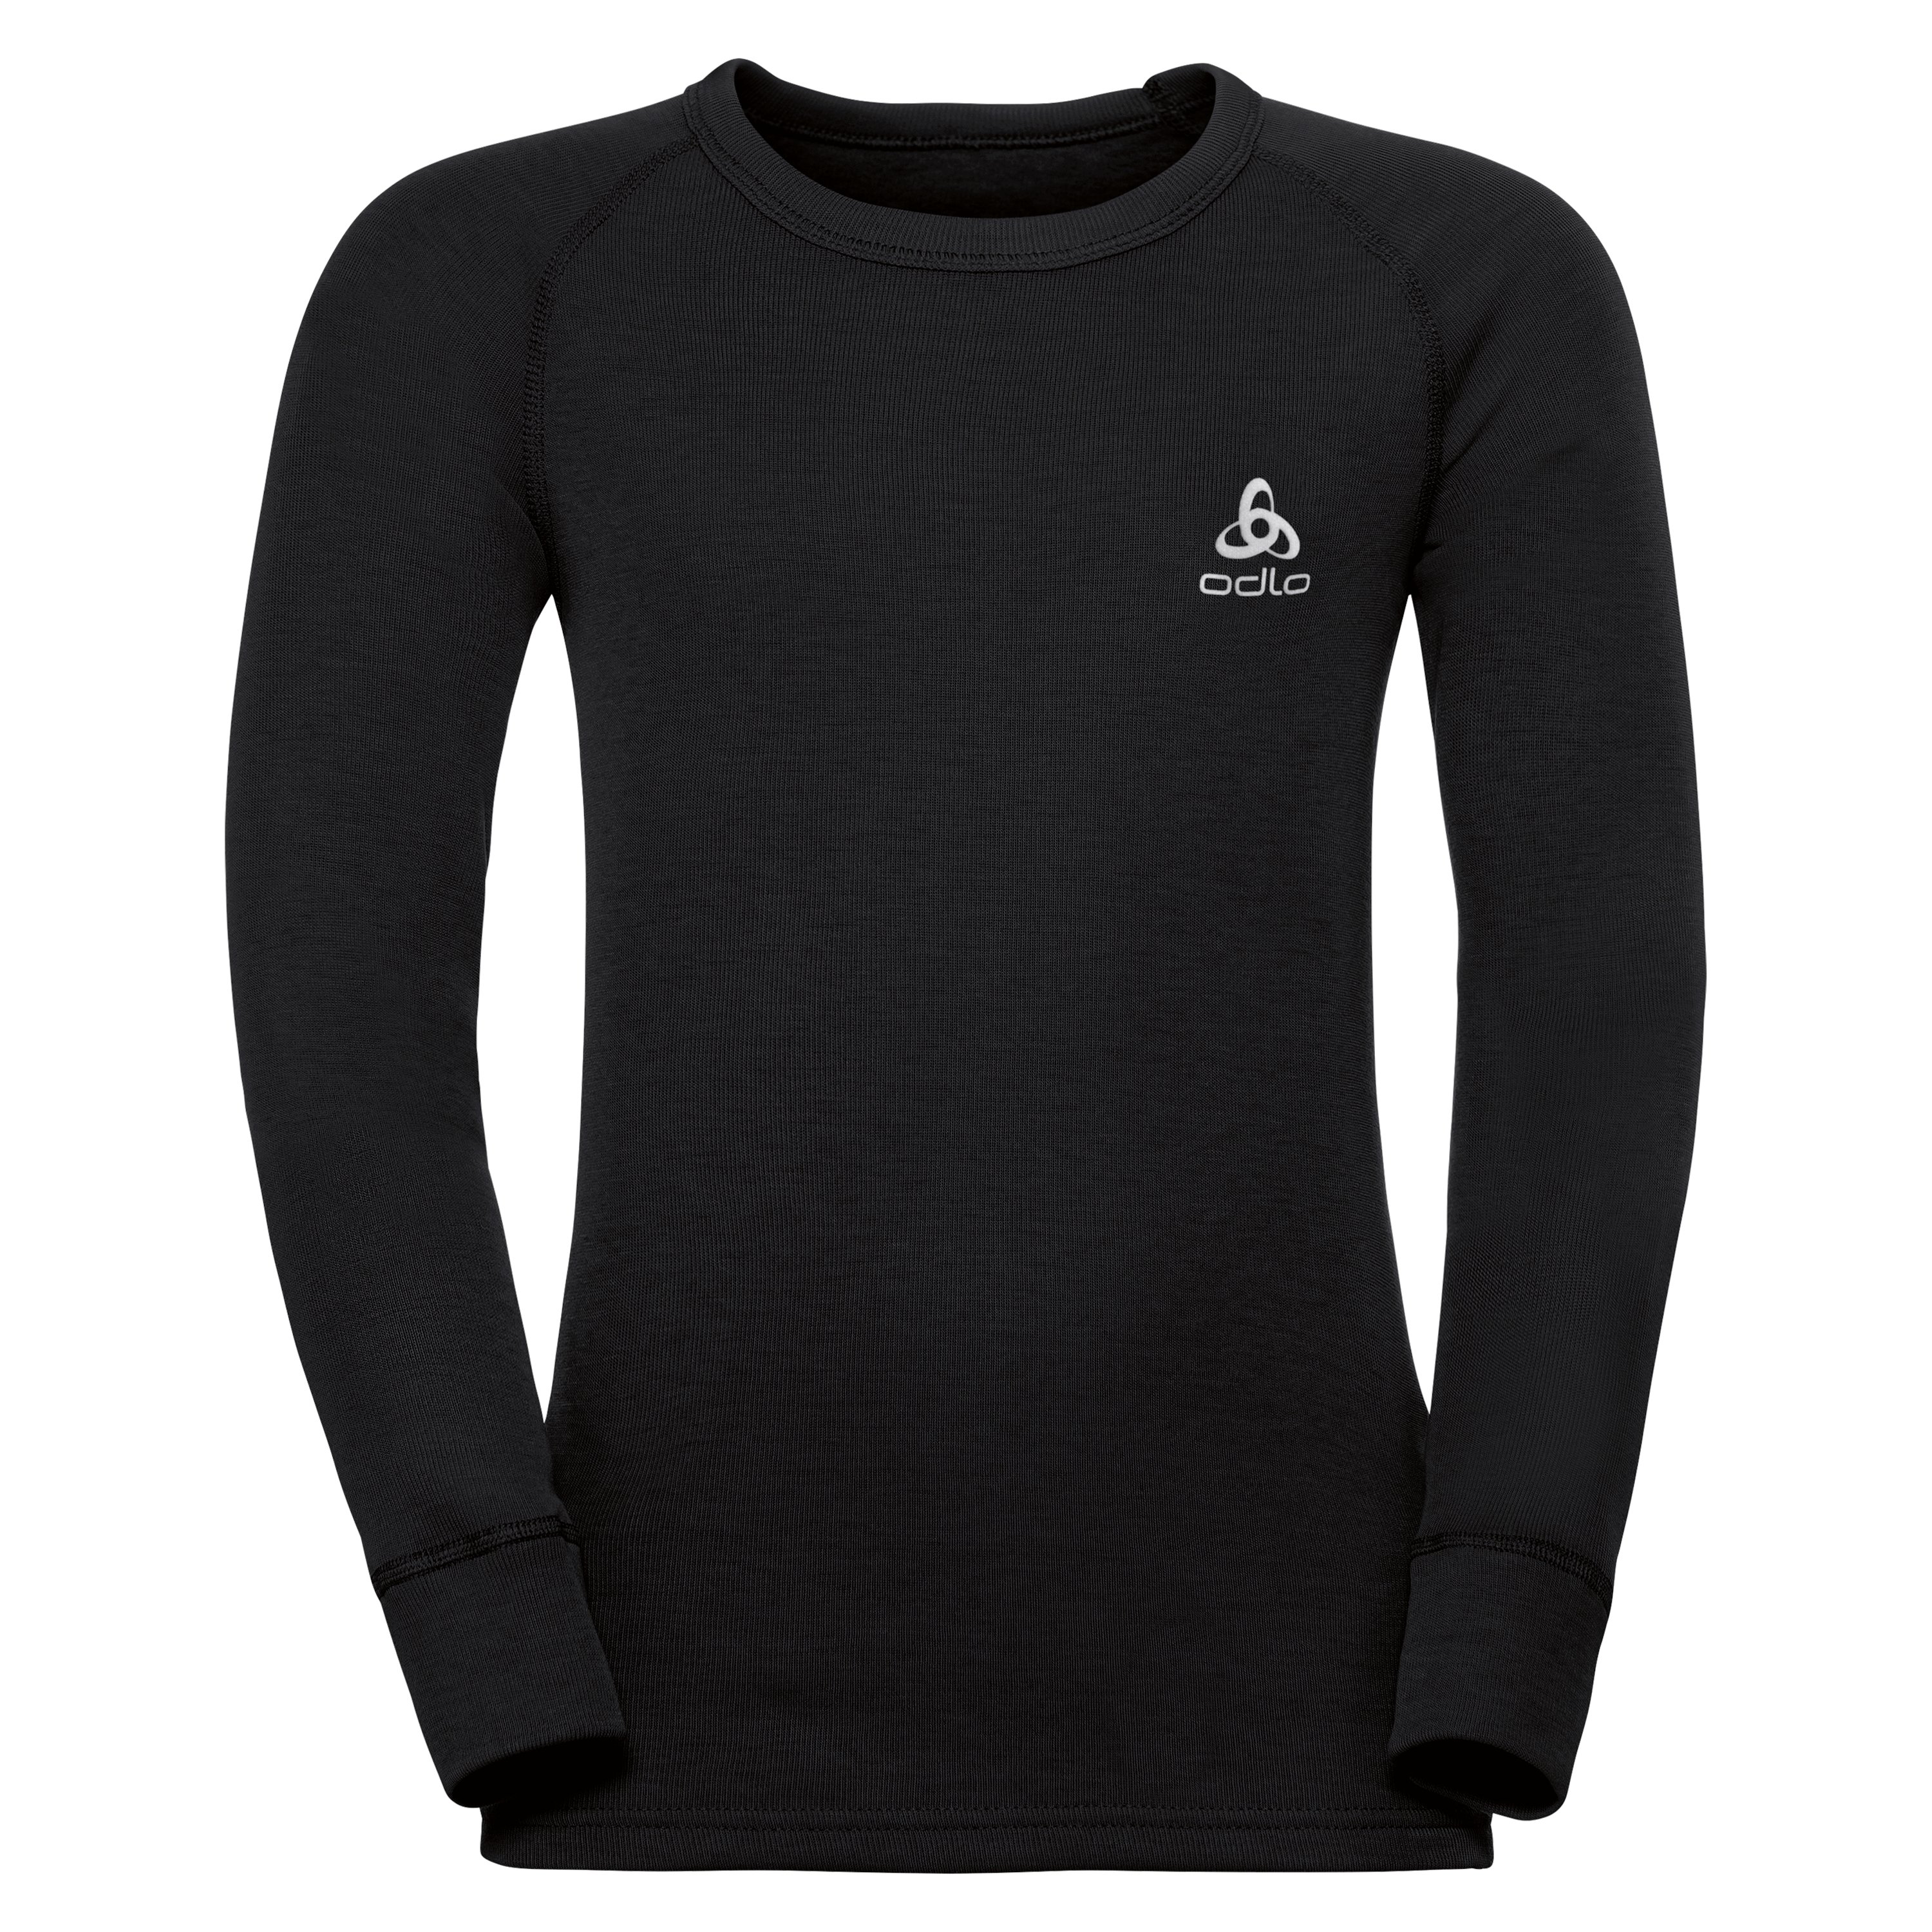 ODLO Active Warm Funktionsunterwäsche Langarm-Shirt für Kinder, 116, schwarz